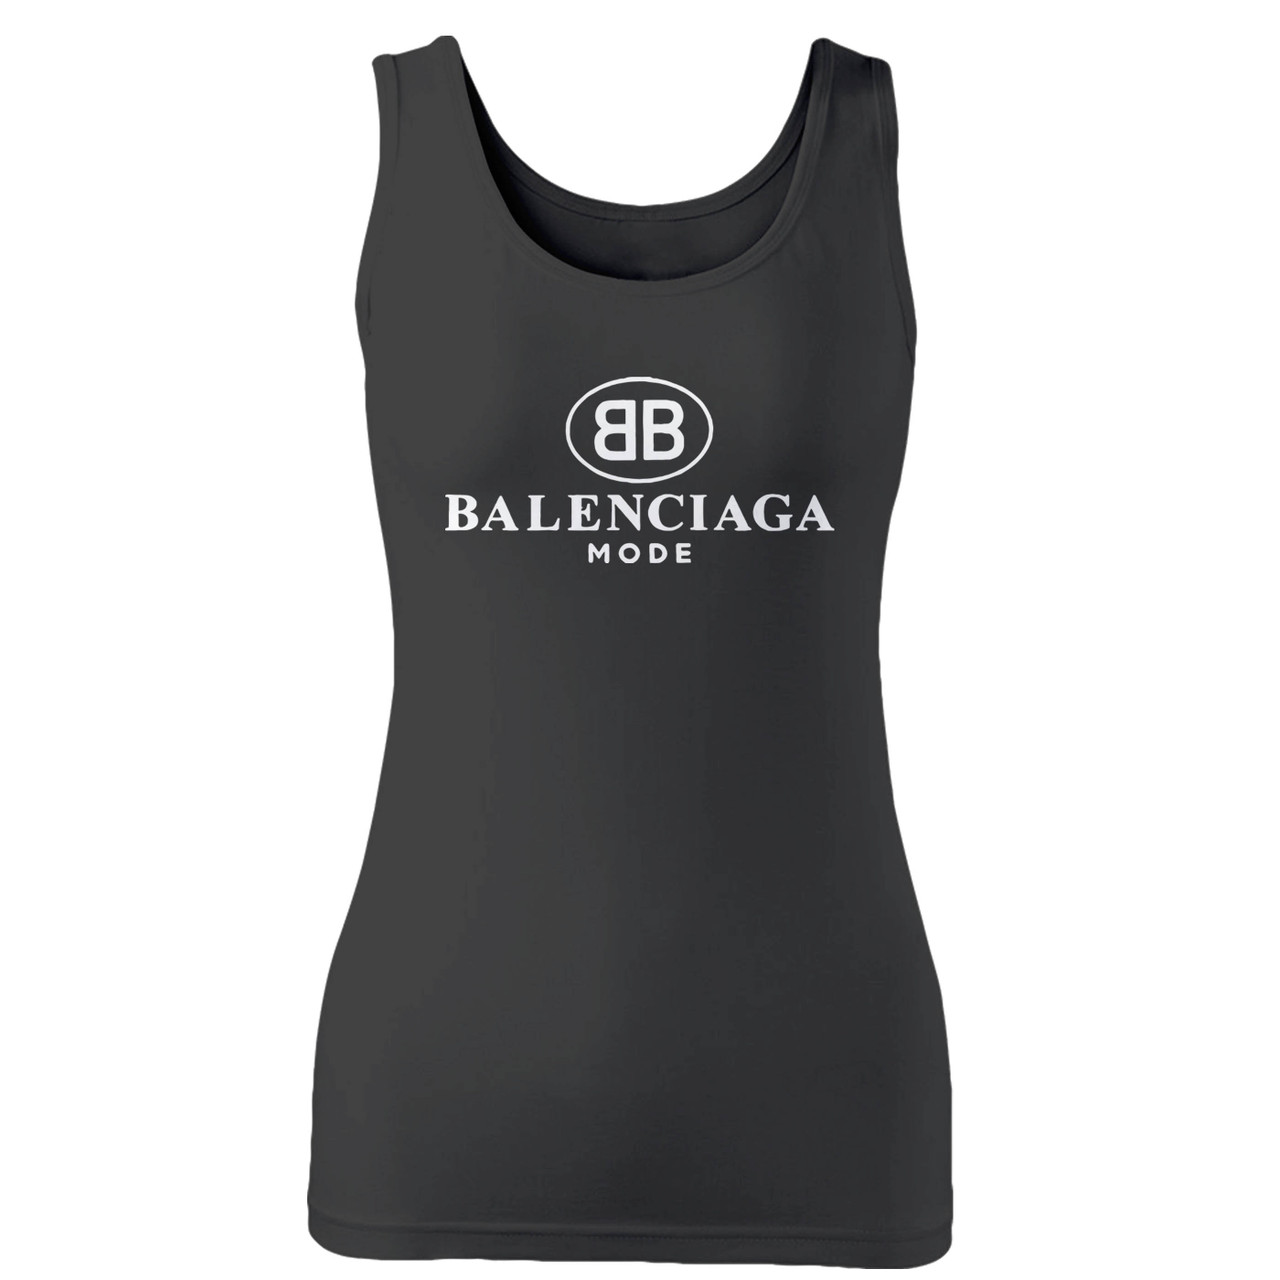 Balenciaga Bb Mode Inspired Women Tank Top